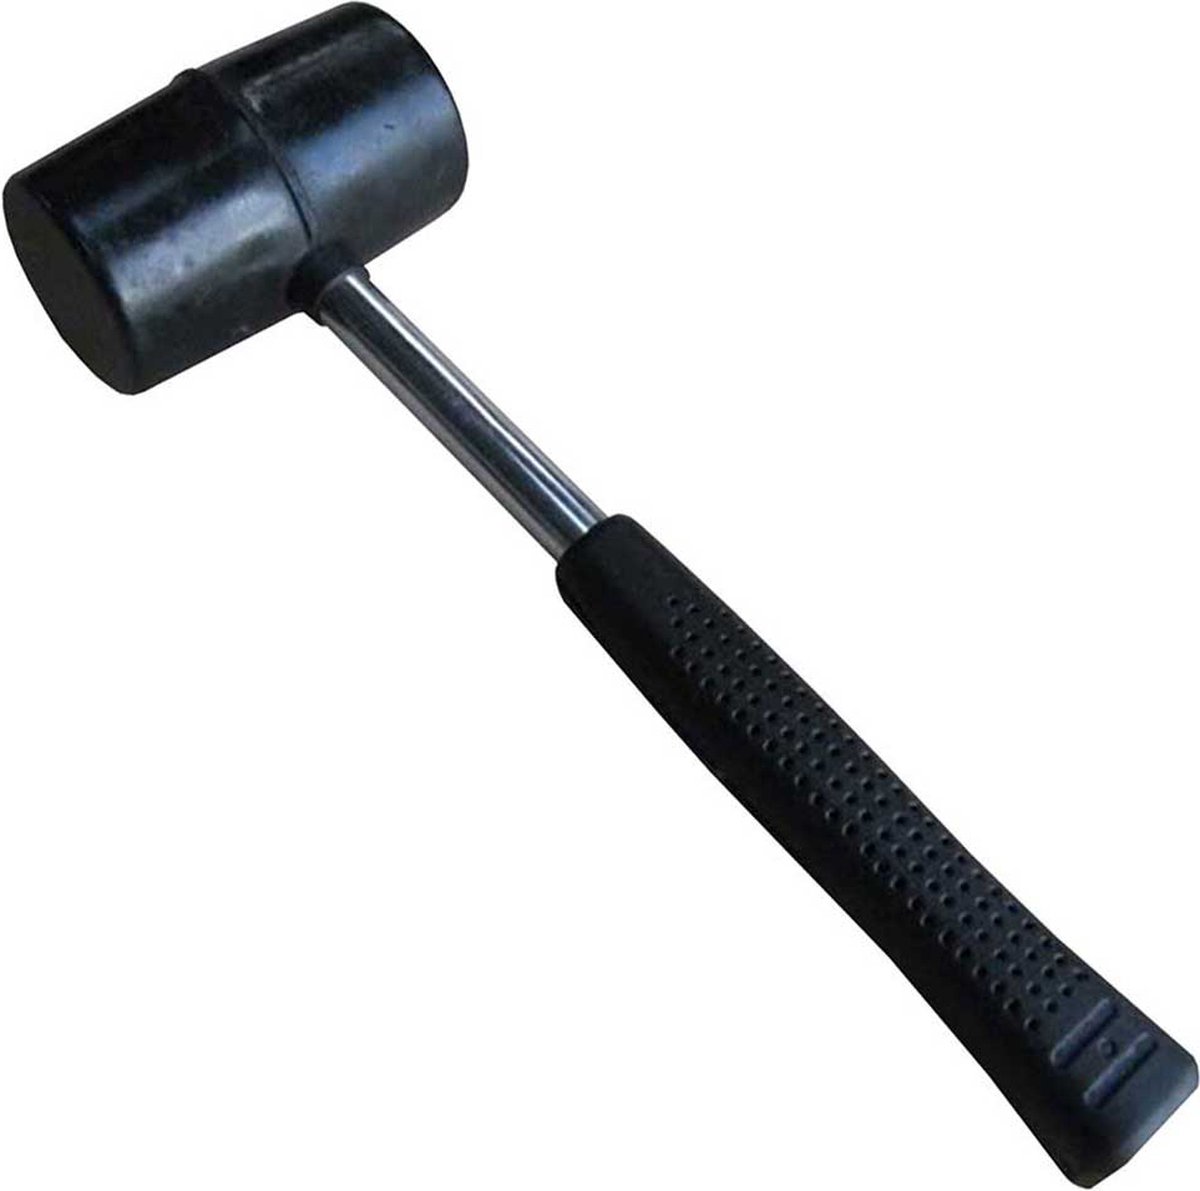 Rubberen hamer - Tegel hamer - Haring hamer - 8.5cm x 5.5cm x 27cm